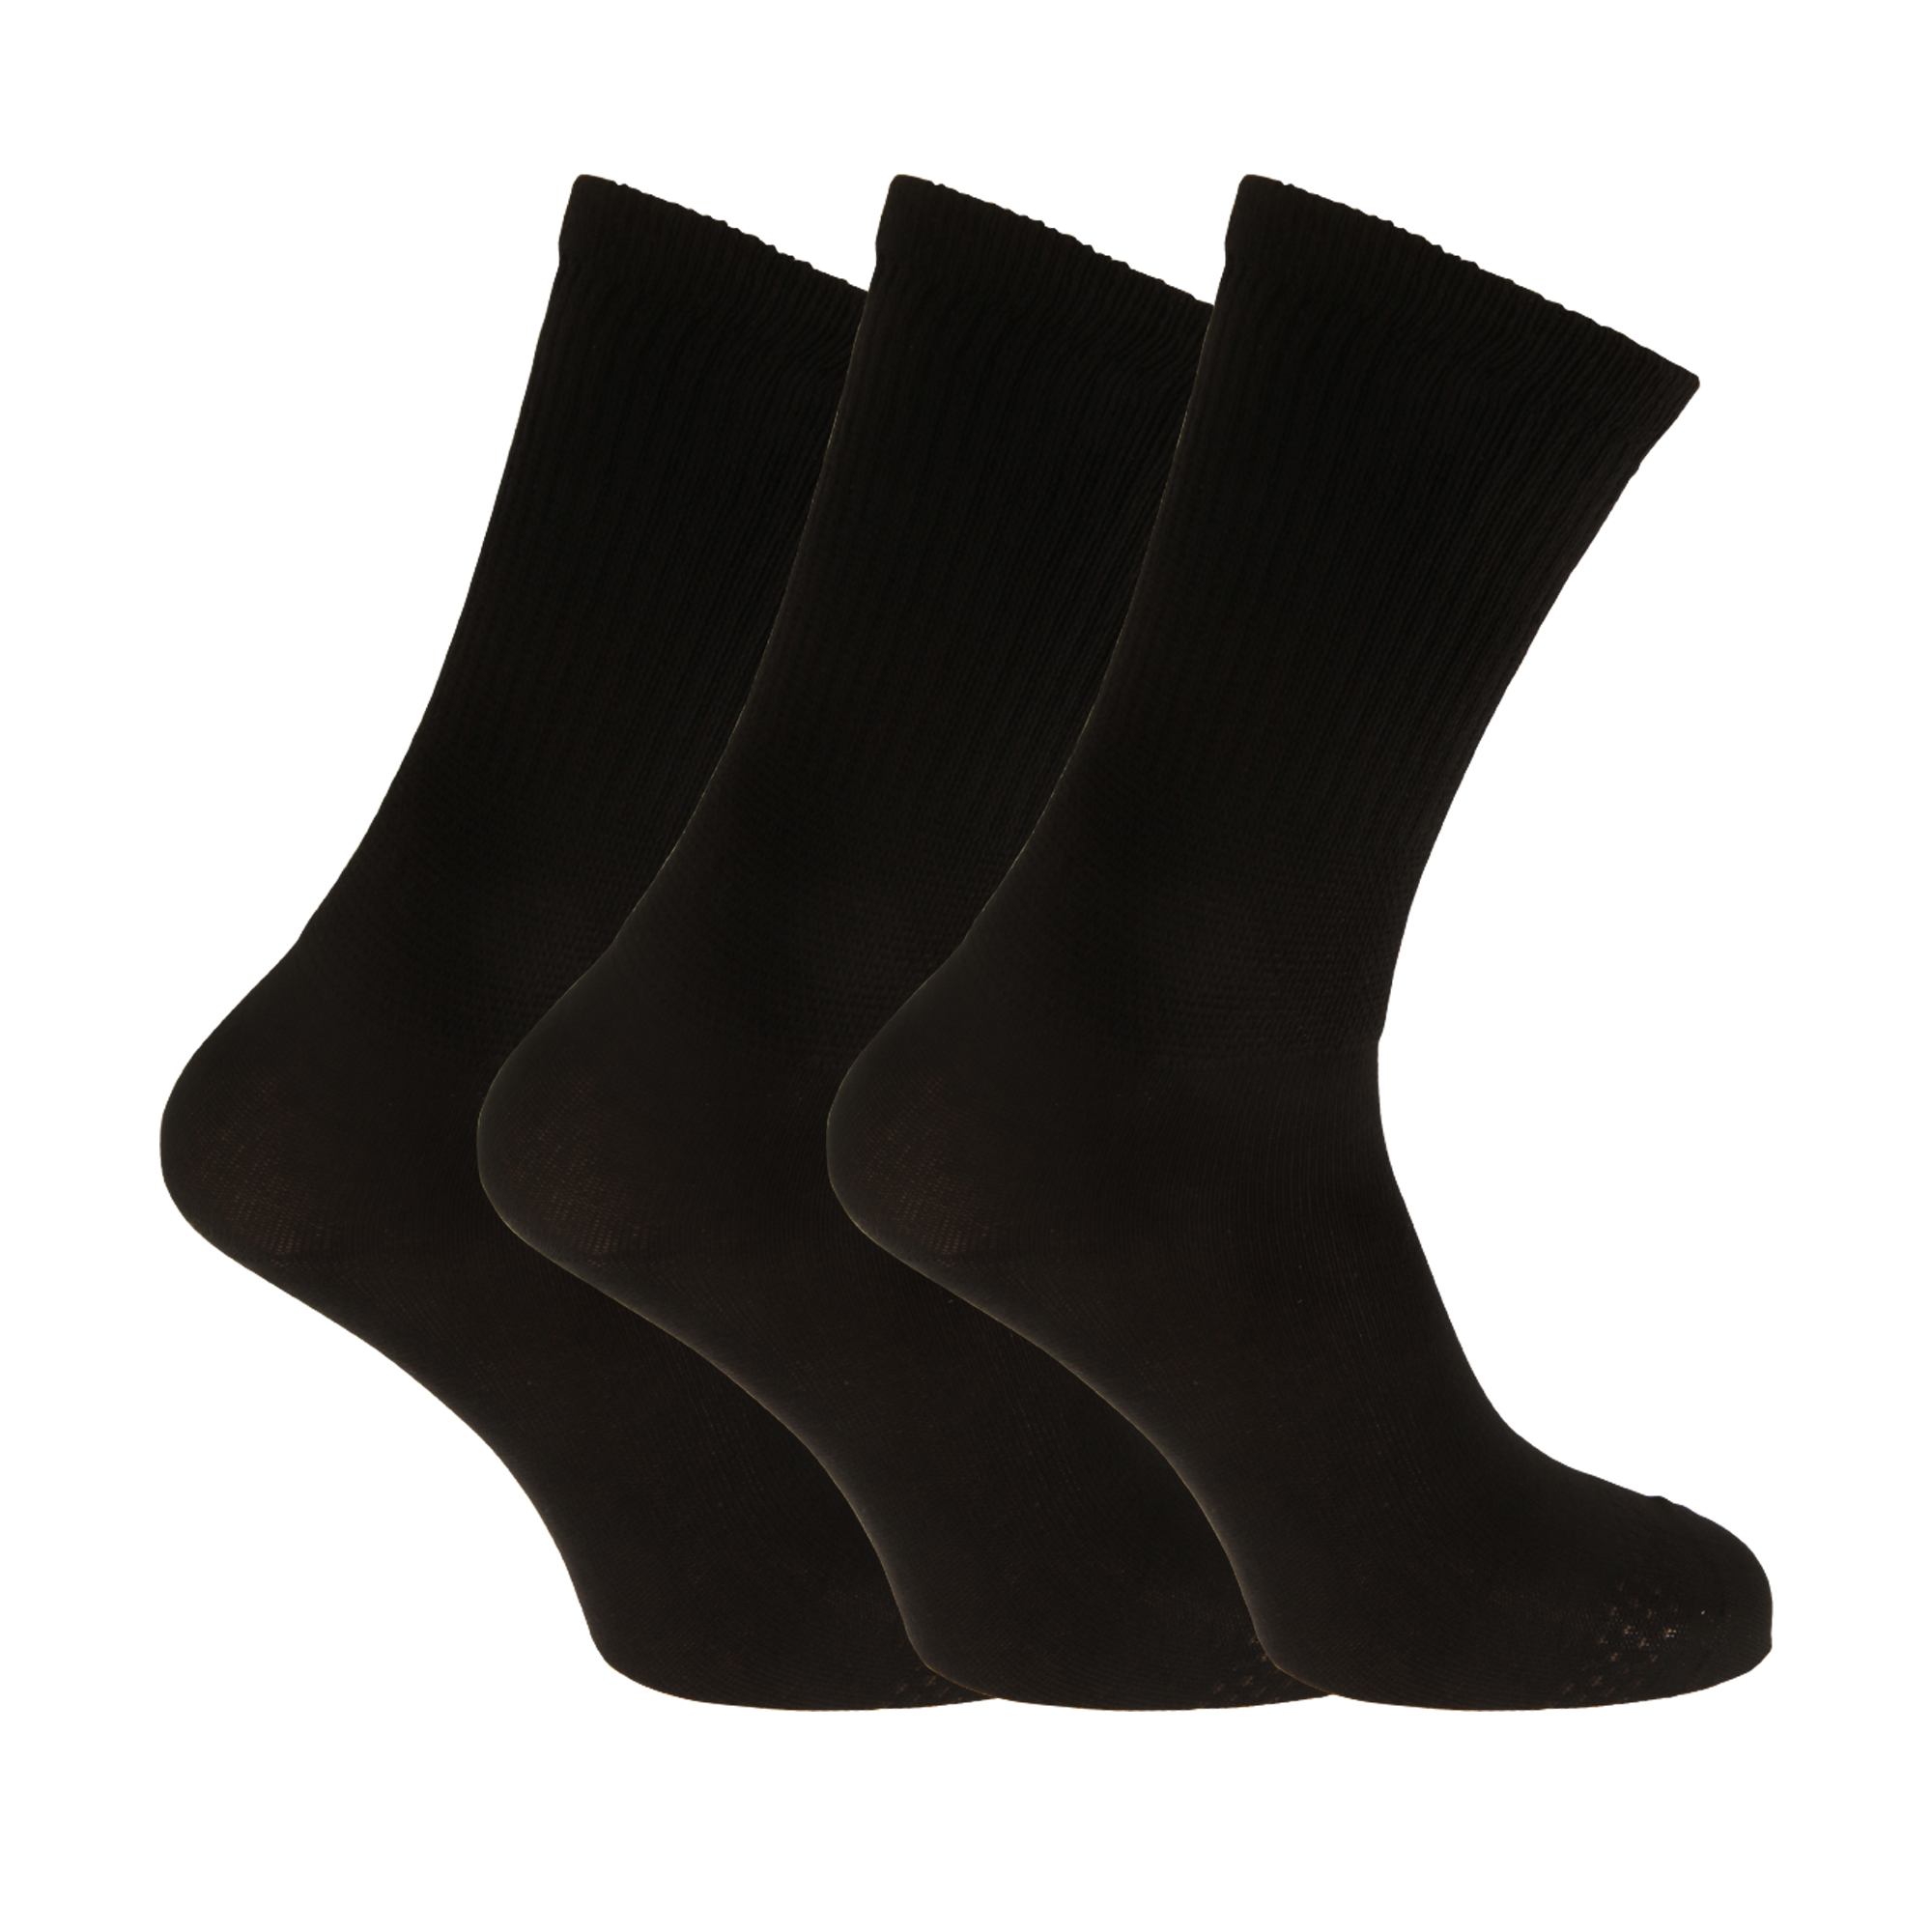 Calcetines Extra Anchos Cómodos Universal Textiles (3 Pares) - negro - 